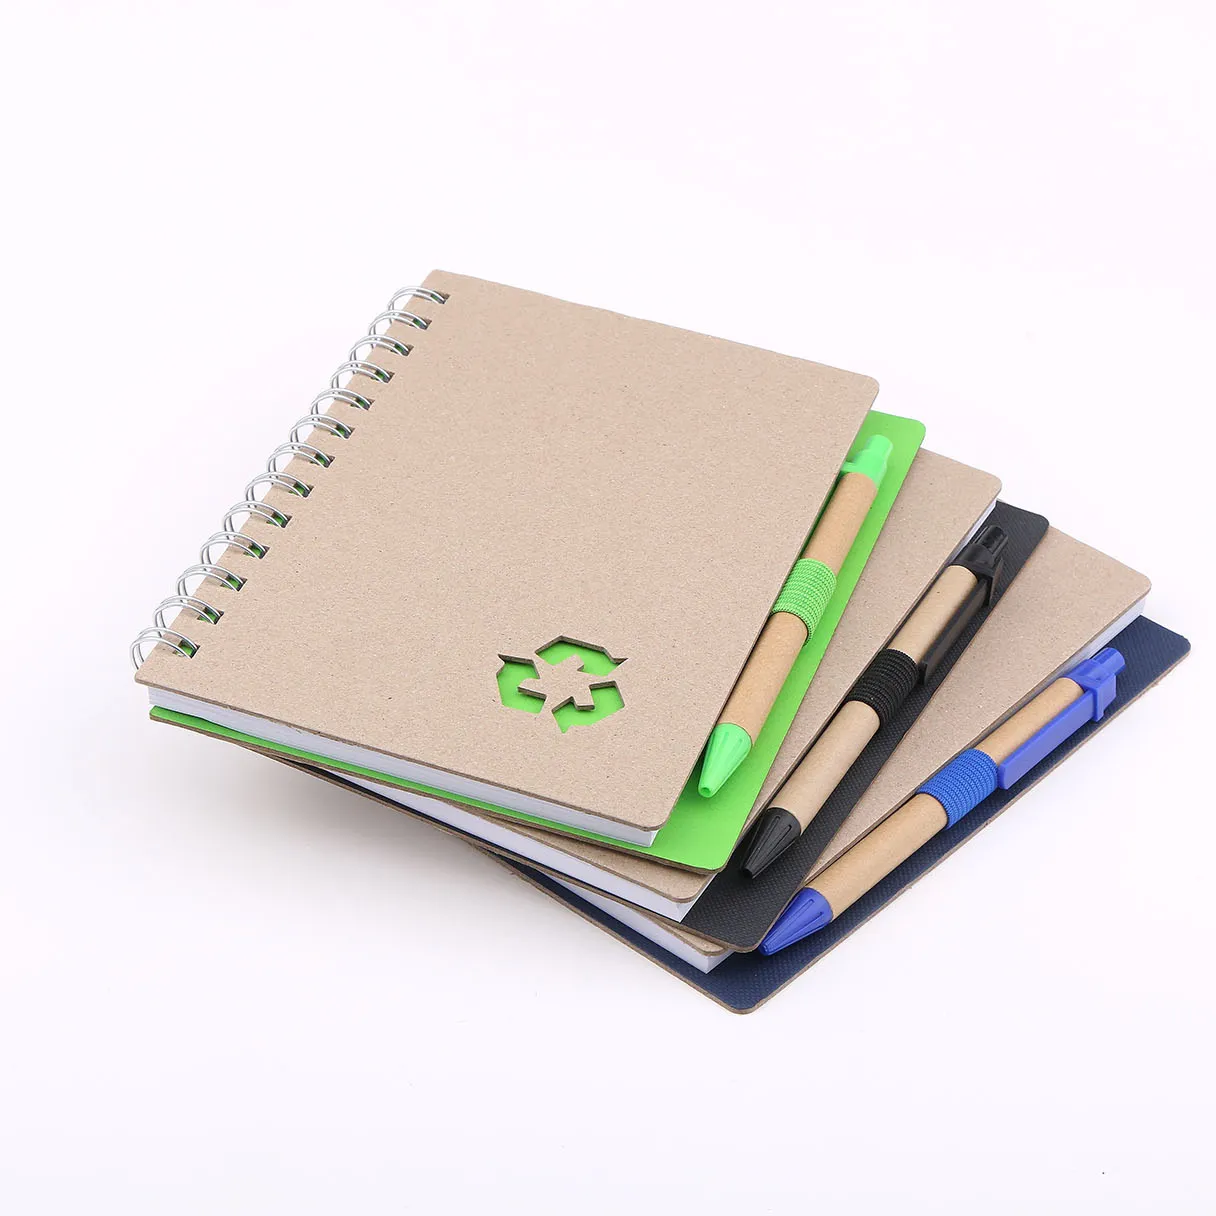 70 Blatt Notizbuch mit Recycling papier umschlag passender Stift mit Papier fass im elastischen Stiftschlaufen-Notizbuch als Werbe geschenk